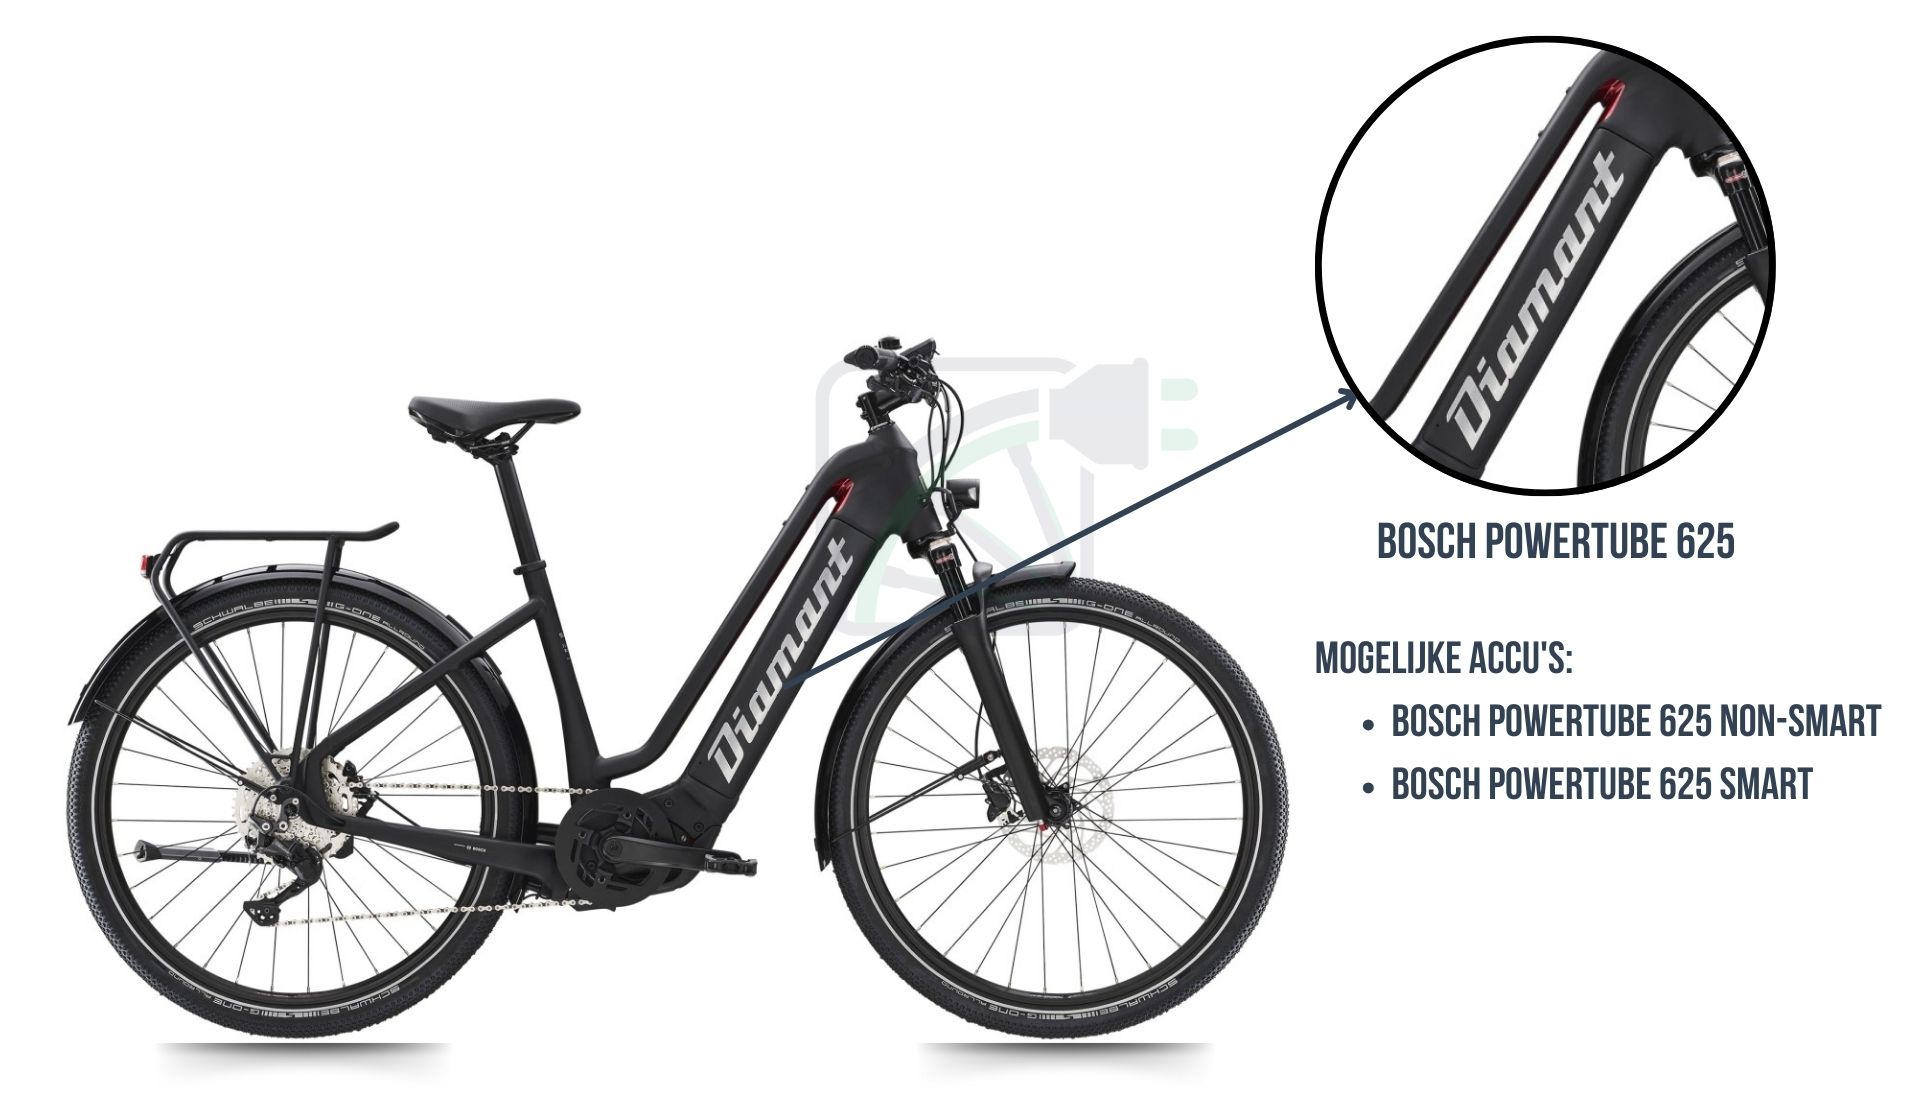 La bicicletta elettrica Diamant Zouma, con evidenziata quale batteria è appropriata per questa bicicletta. Si tratta della Bosch Powertube 625 SMART o della Bosch Powertube 625 non-SMART.